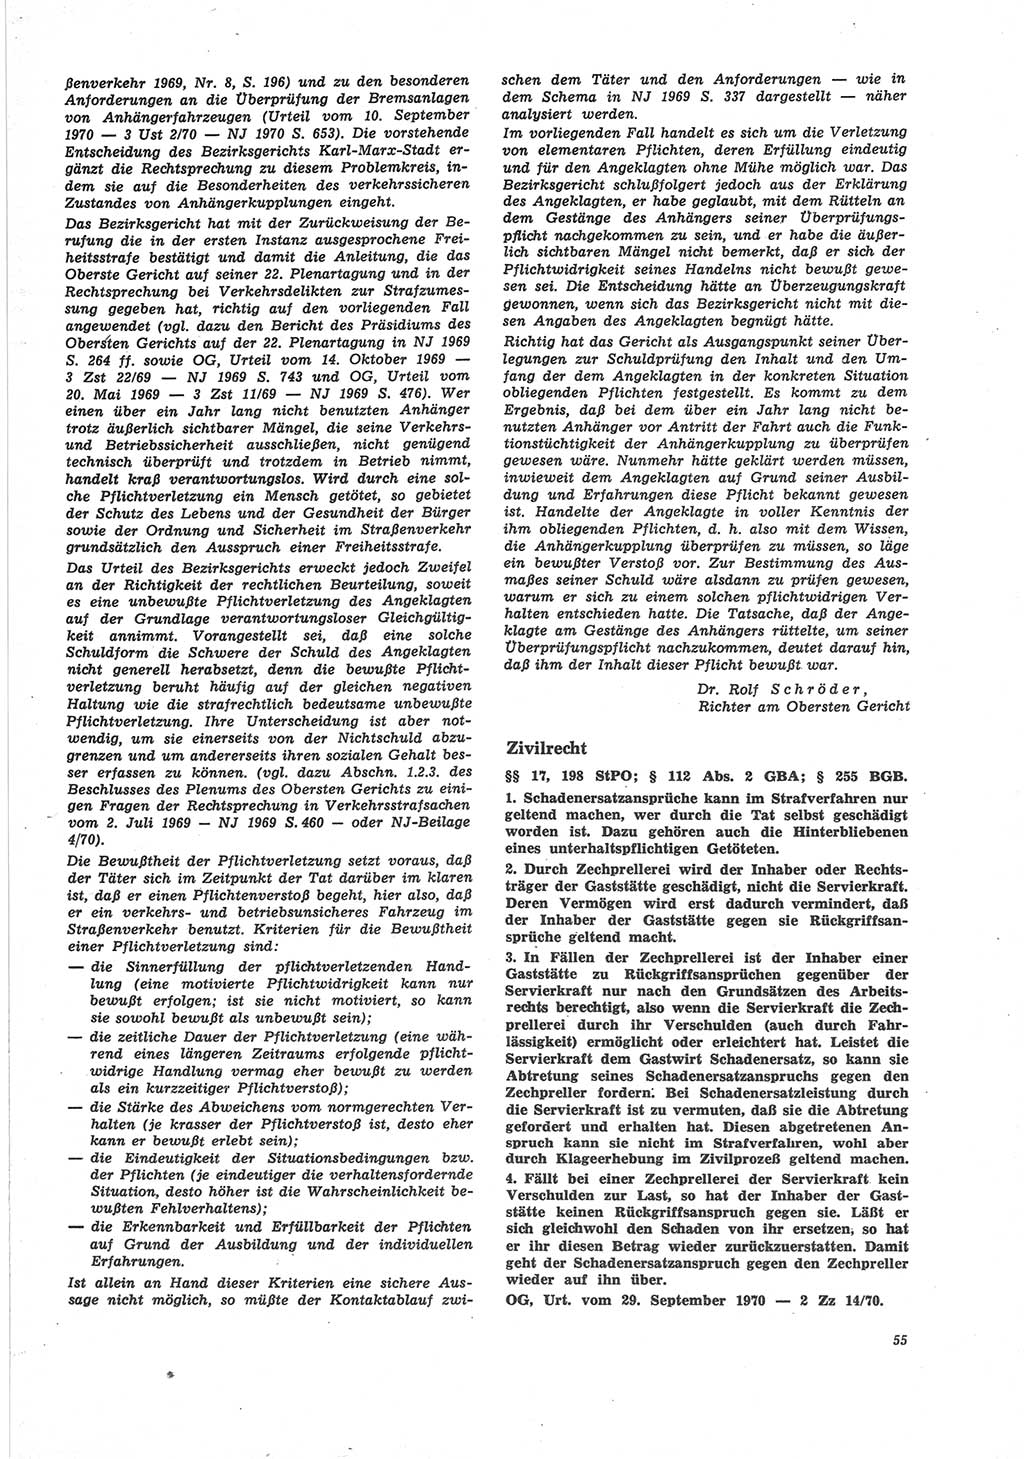 Neue Justiz (NJ), Zeitschrift für Recht und Rechtswissenschaft [Deutsche Demokratische Republik (DDR)], 25. Jahrgang 1971, Seite 55 (NJ DDR 1971, S. 55)